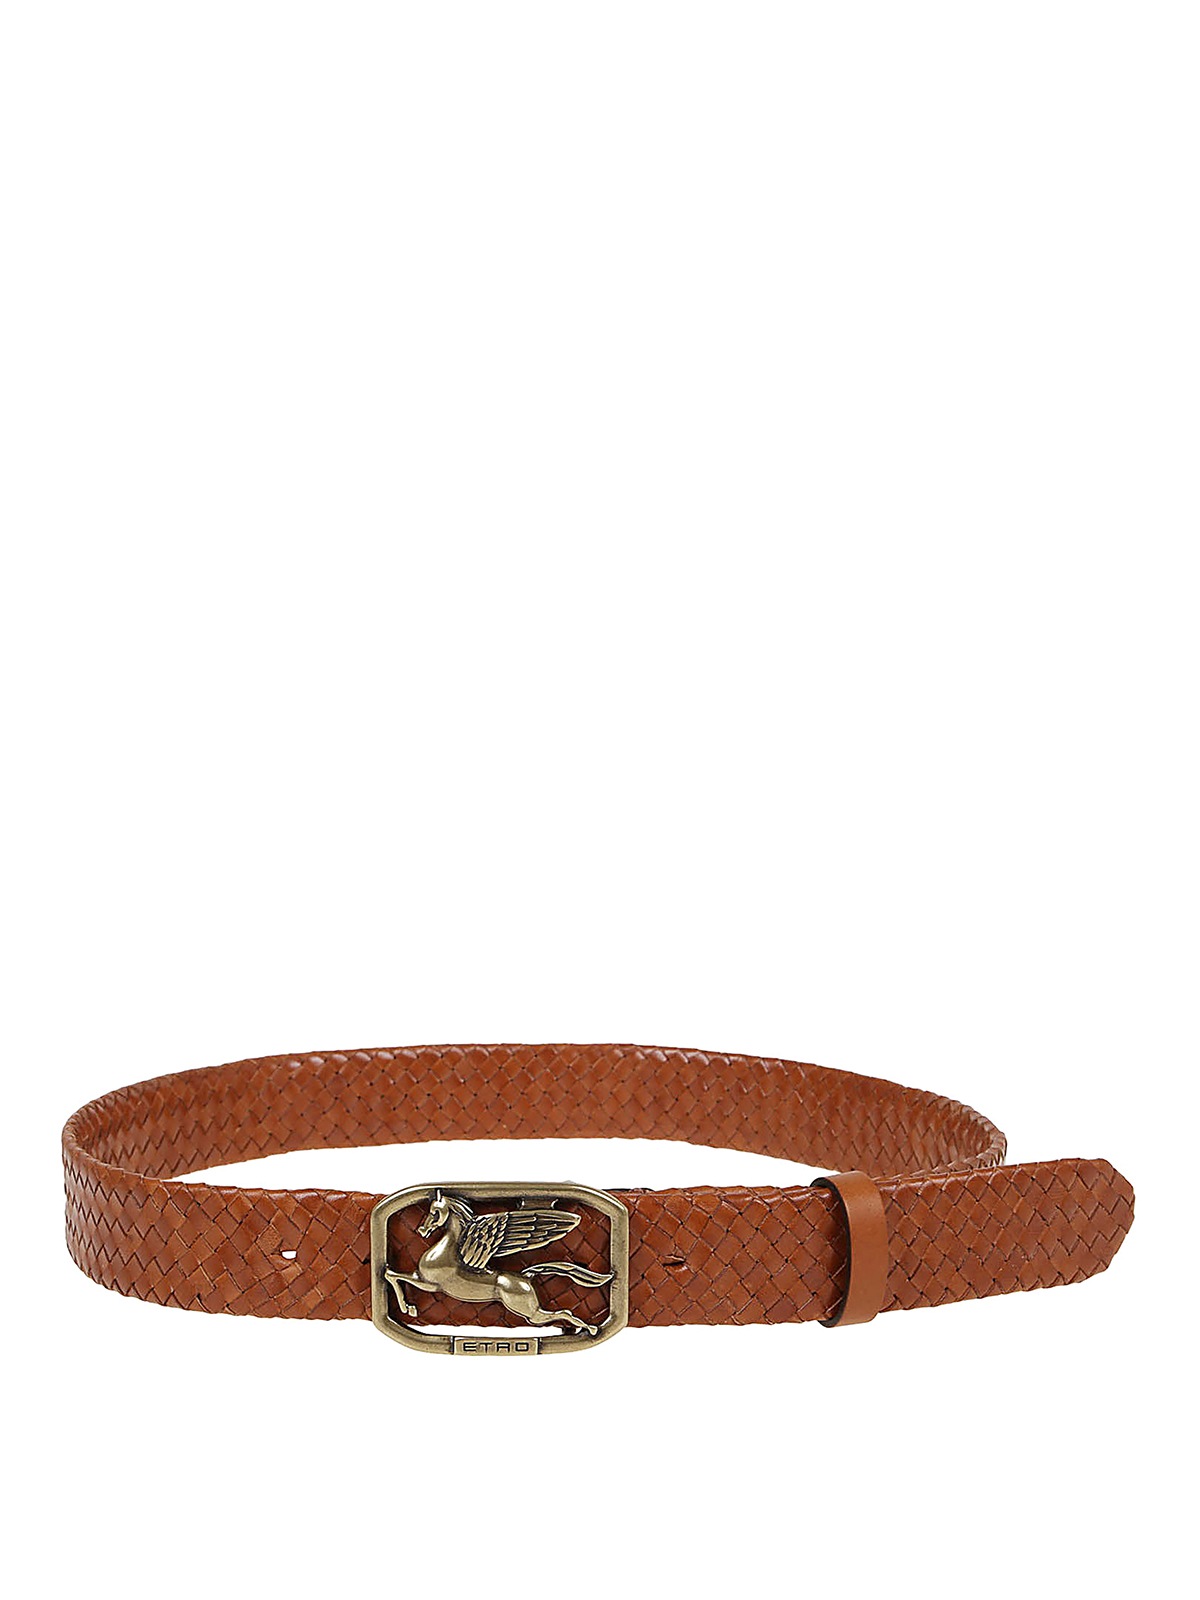 Etro - Woven leather belt - belts - 1I3807554150 | Shop online at iKRIX